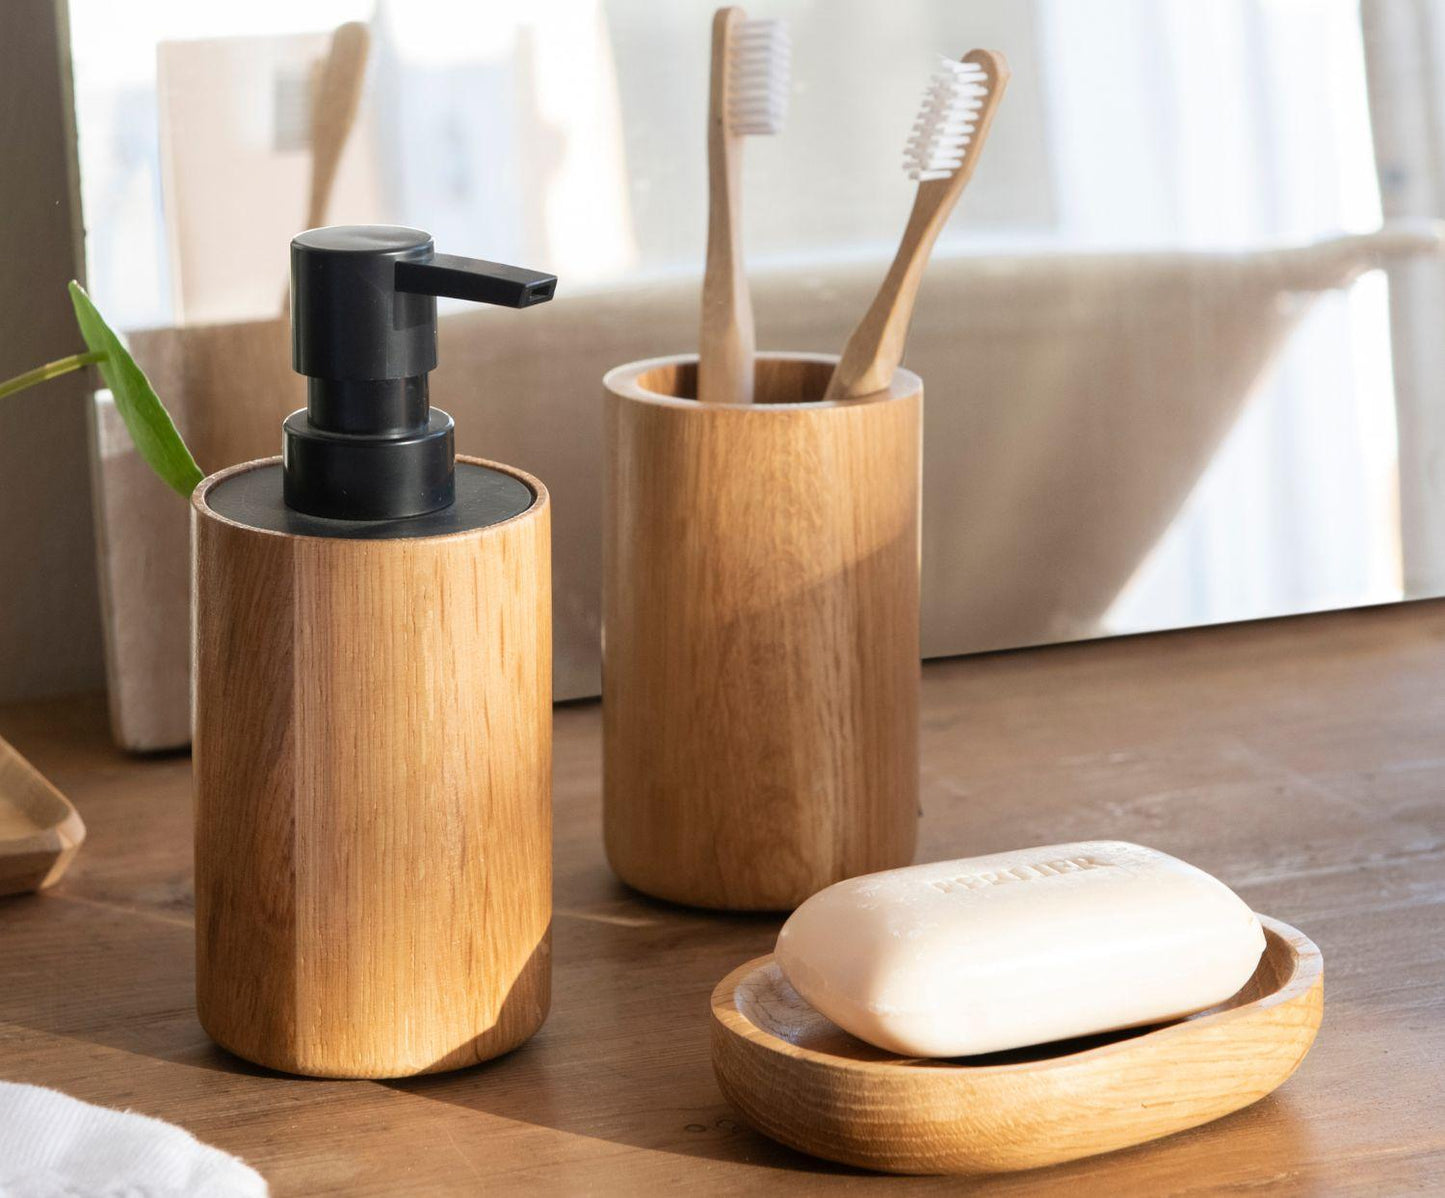 Bamboo Soap Dispenser